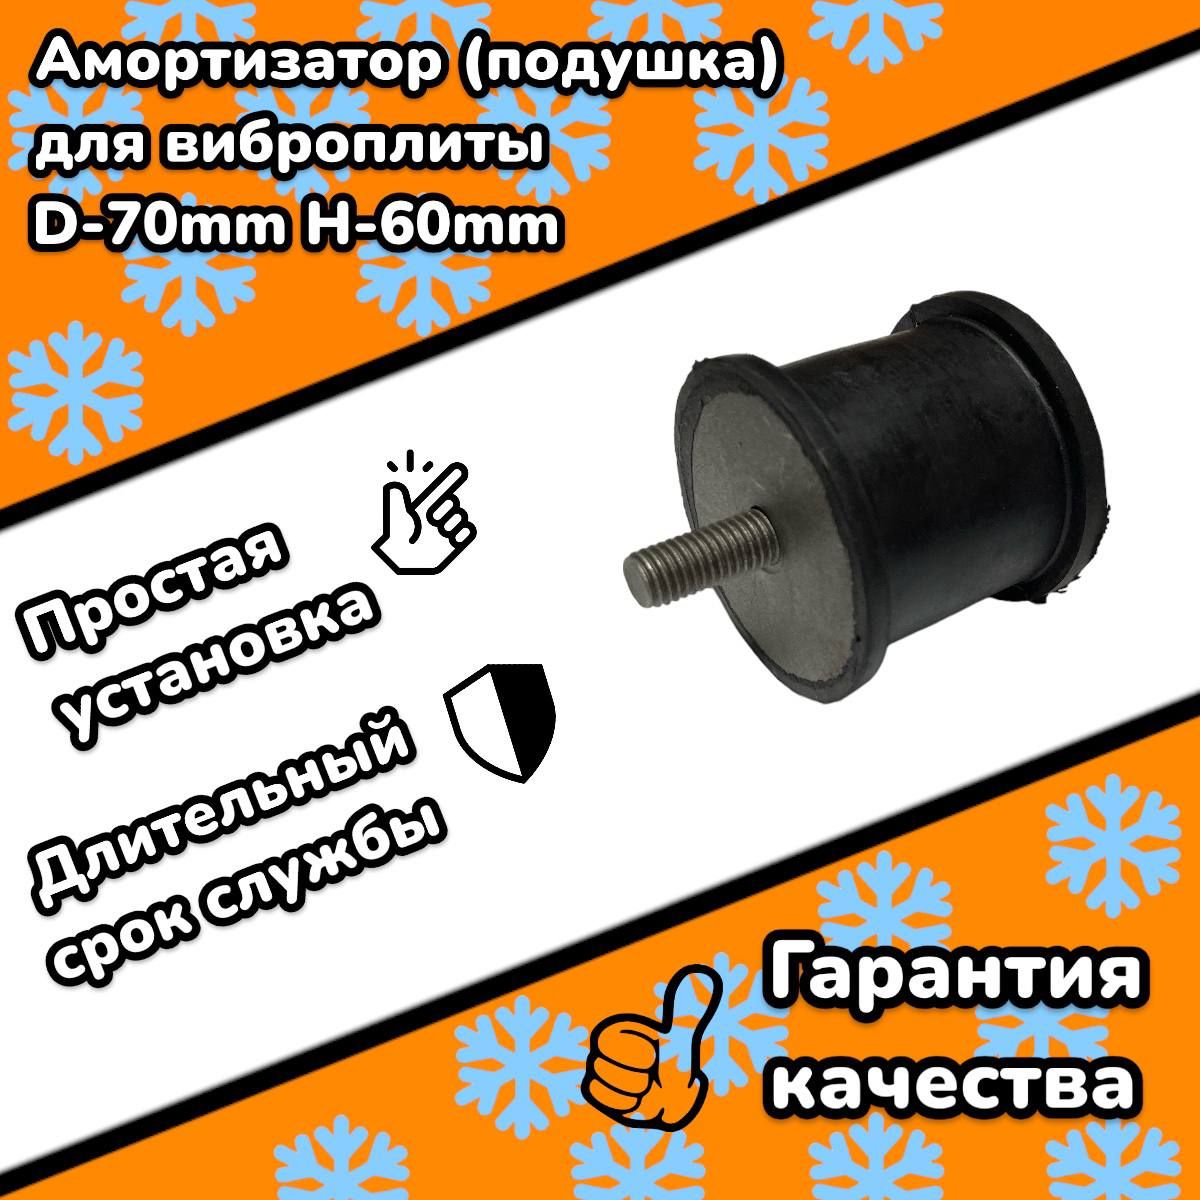 Амортизатор(подушка)длявиброплиты,(d-70mm,высота60mm,болтM12)